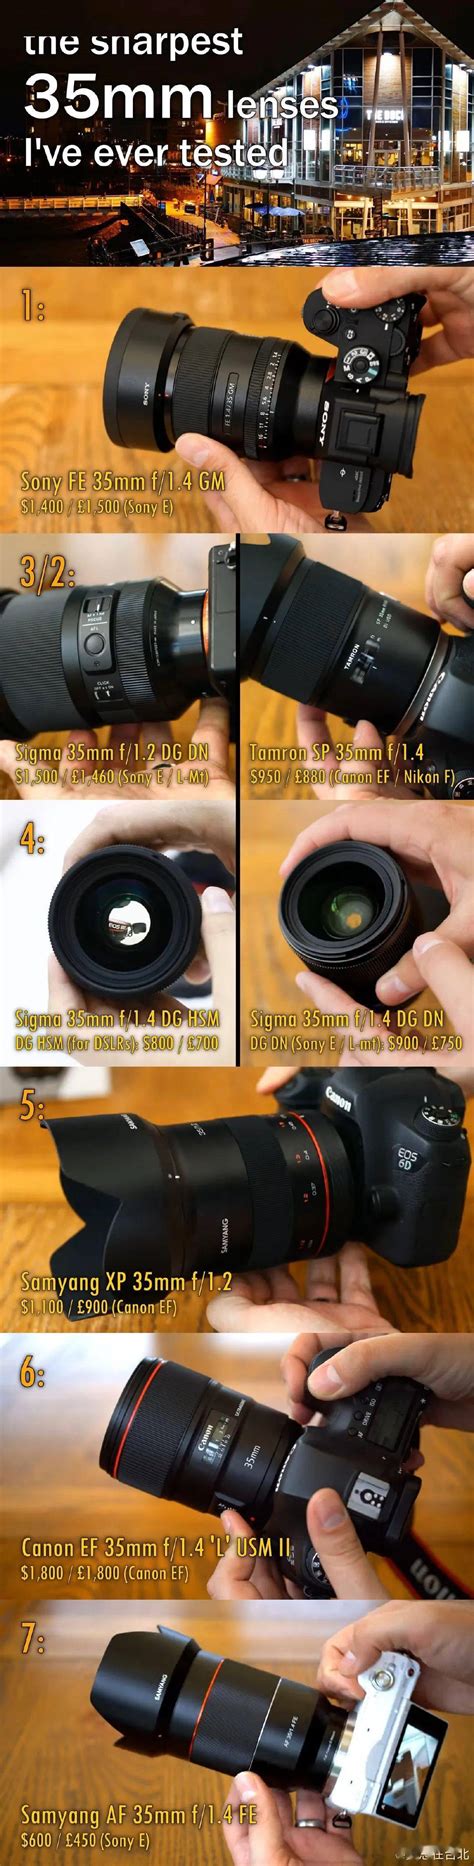 富士XF系列定焦镜头选购攻略 | 富士定焦镜头推荐_什么值得买